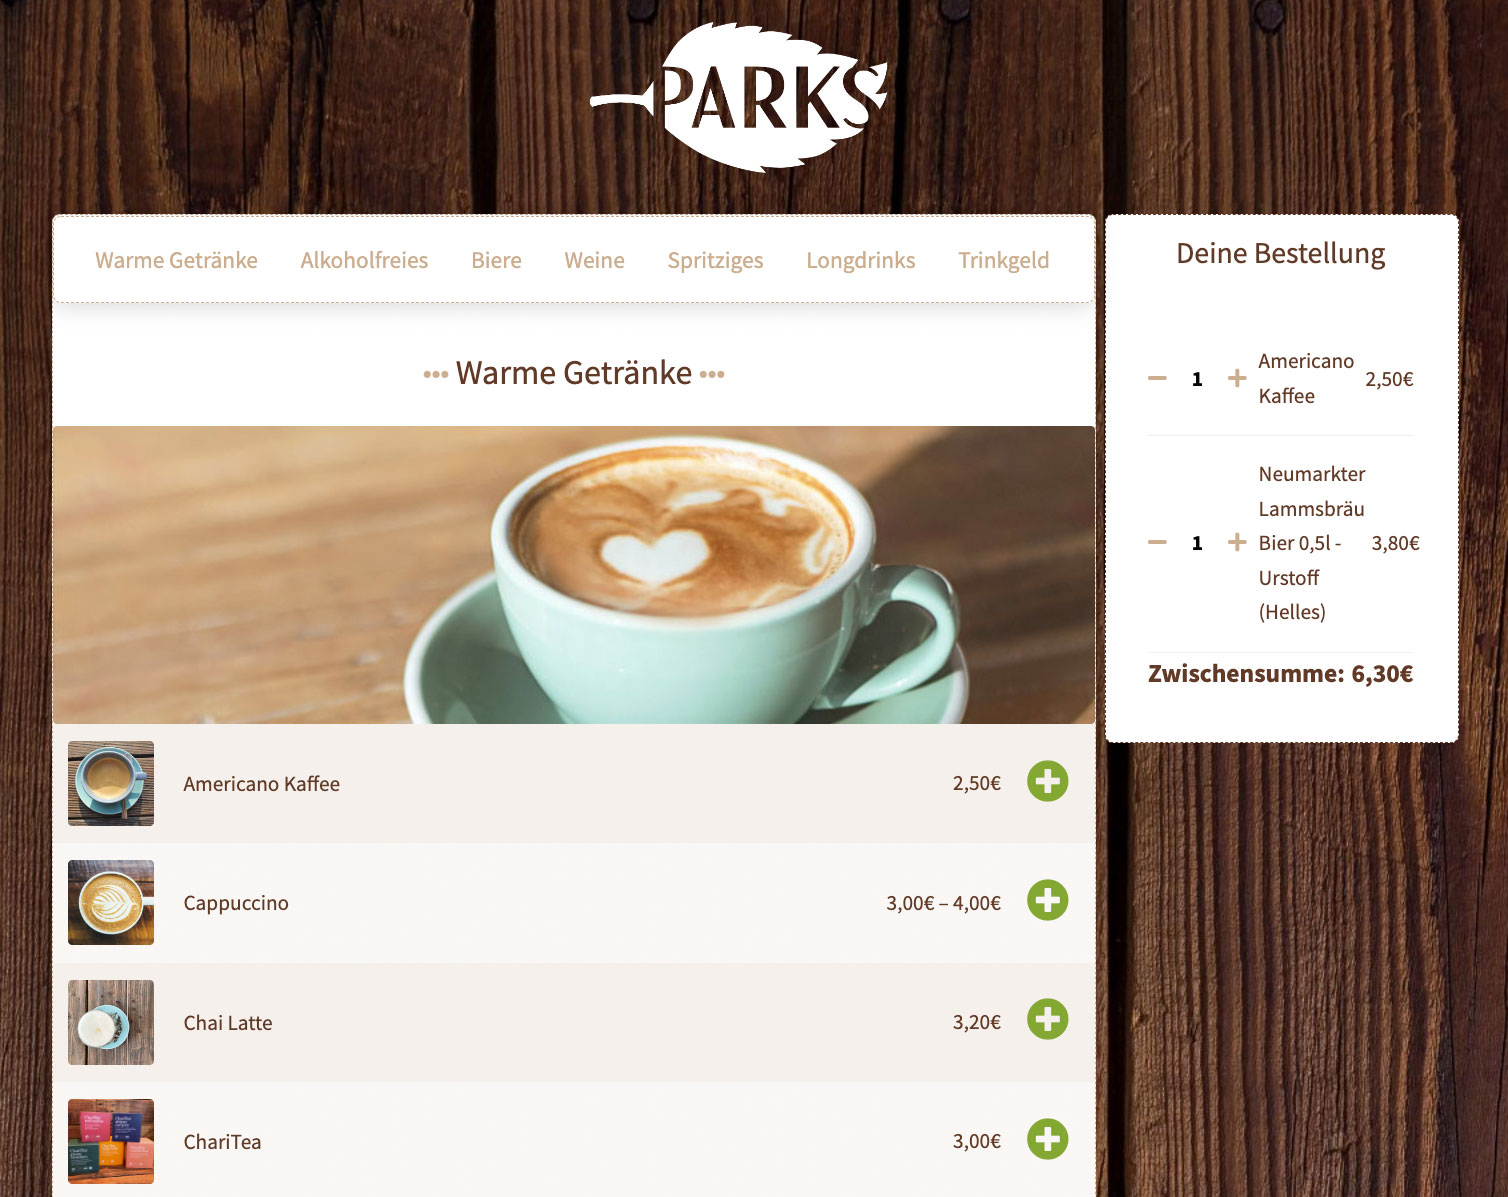 Im Onlineshop vom PARKS Nürnberg kann man direkt im Restaurant mit wenigen Klicks bestellen und direkt zahlen. Das vereinfacht die Abläufe vor Ort.